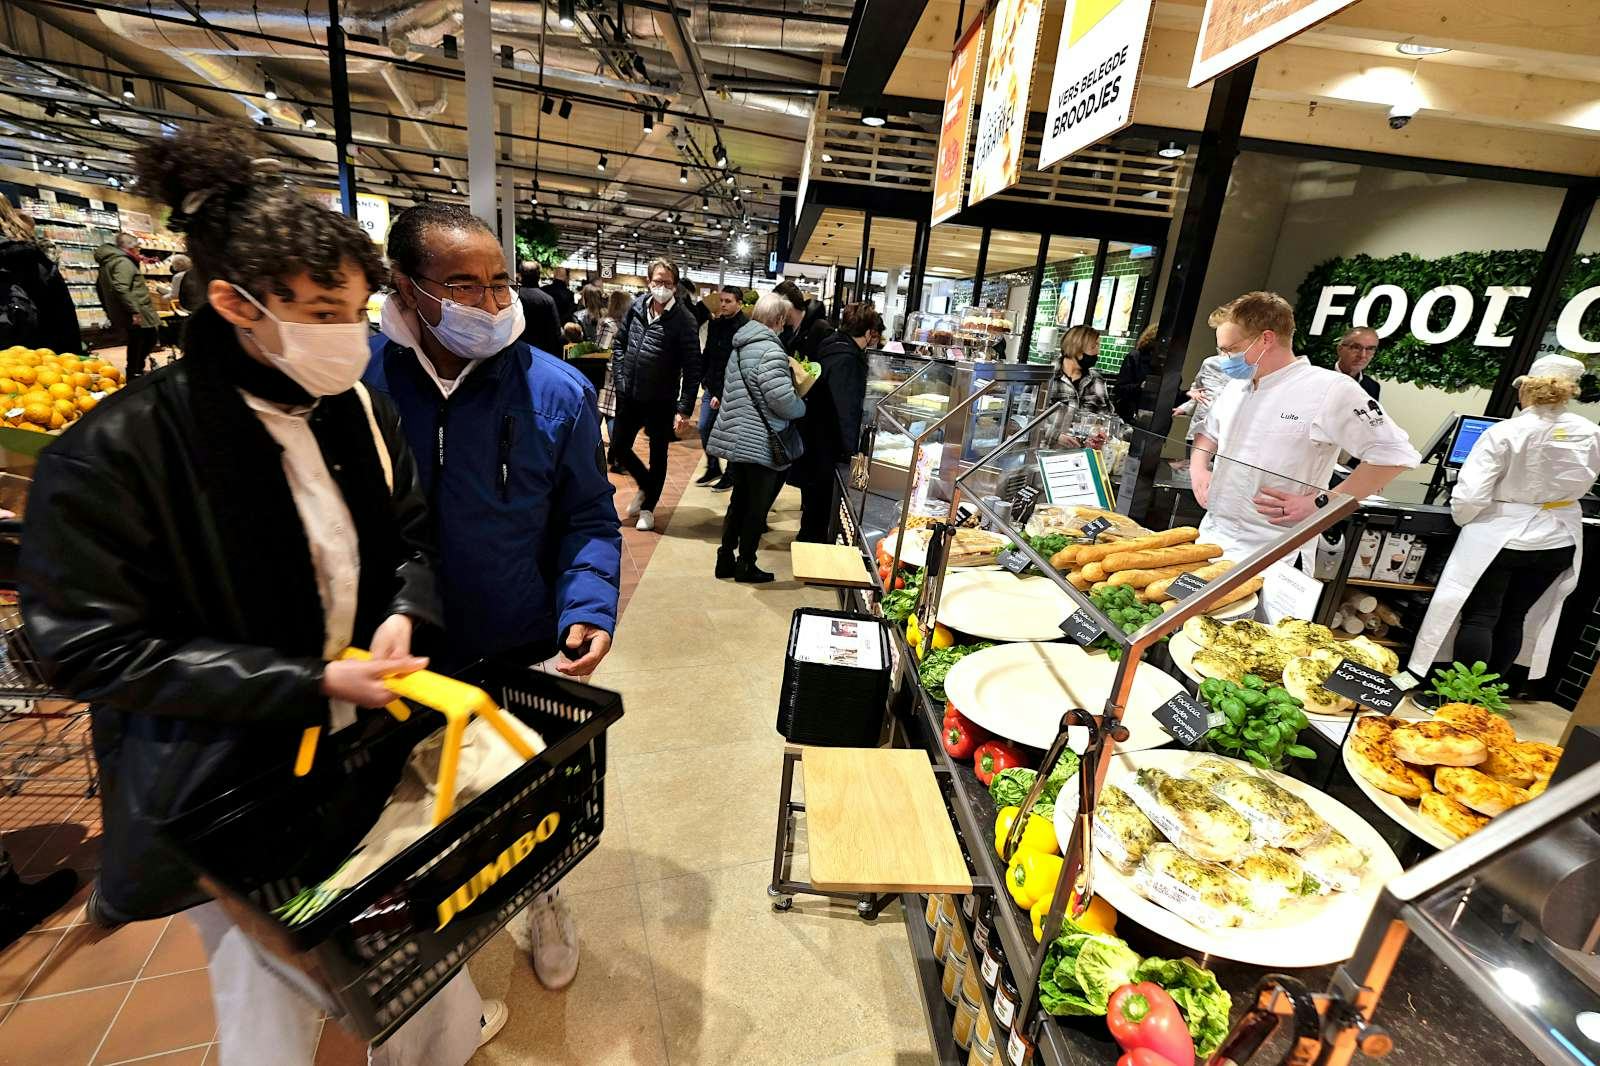 Van Jumbo Foodmarkt Lemkes: stap voor foodretail in Nederland' (video)